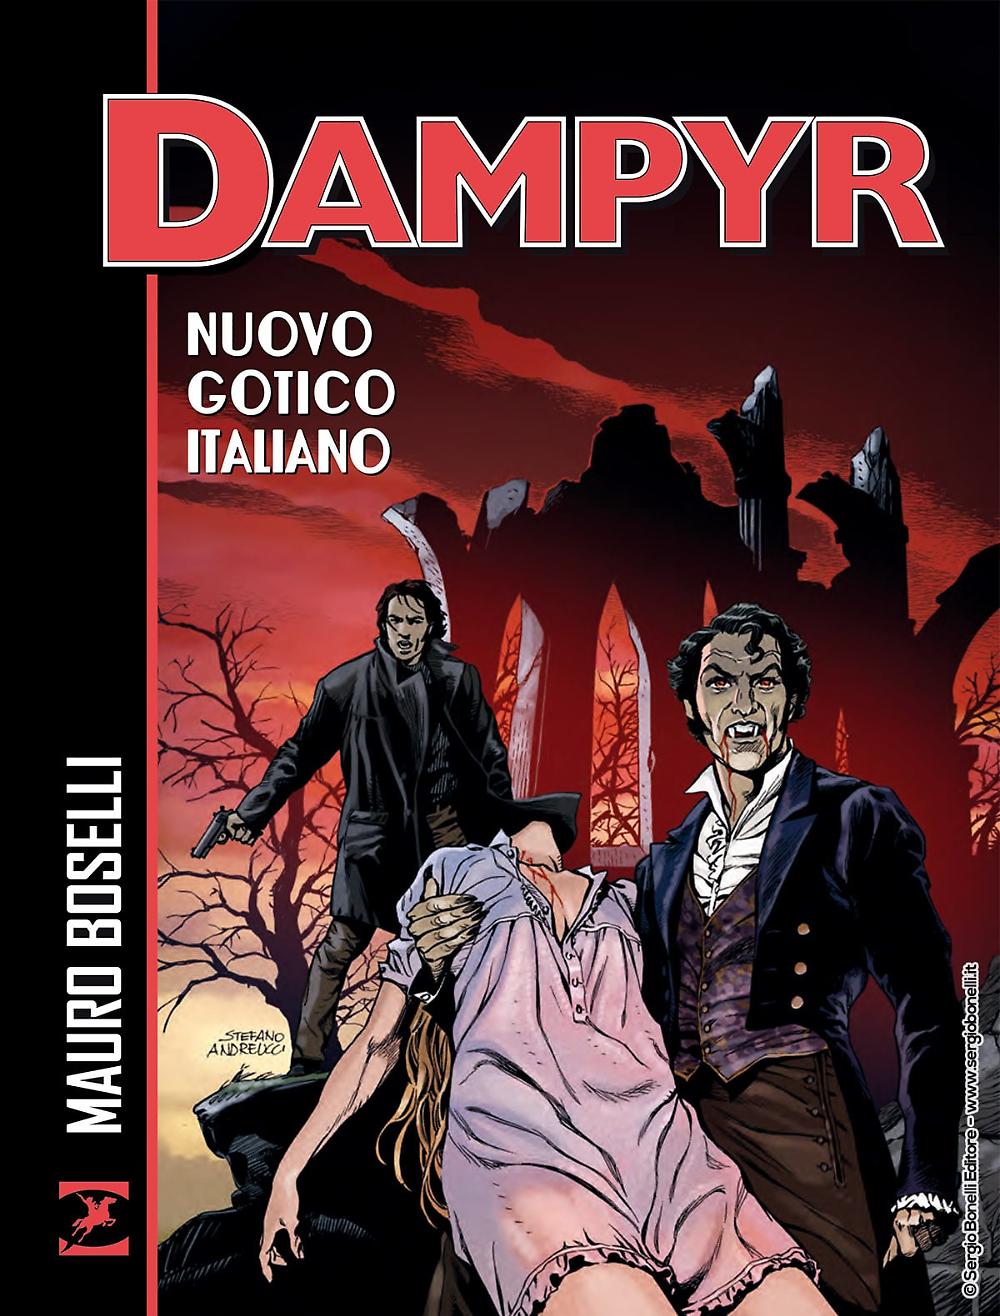 Dampyr: Nuovo gotico italiano